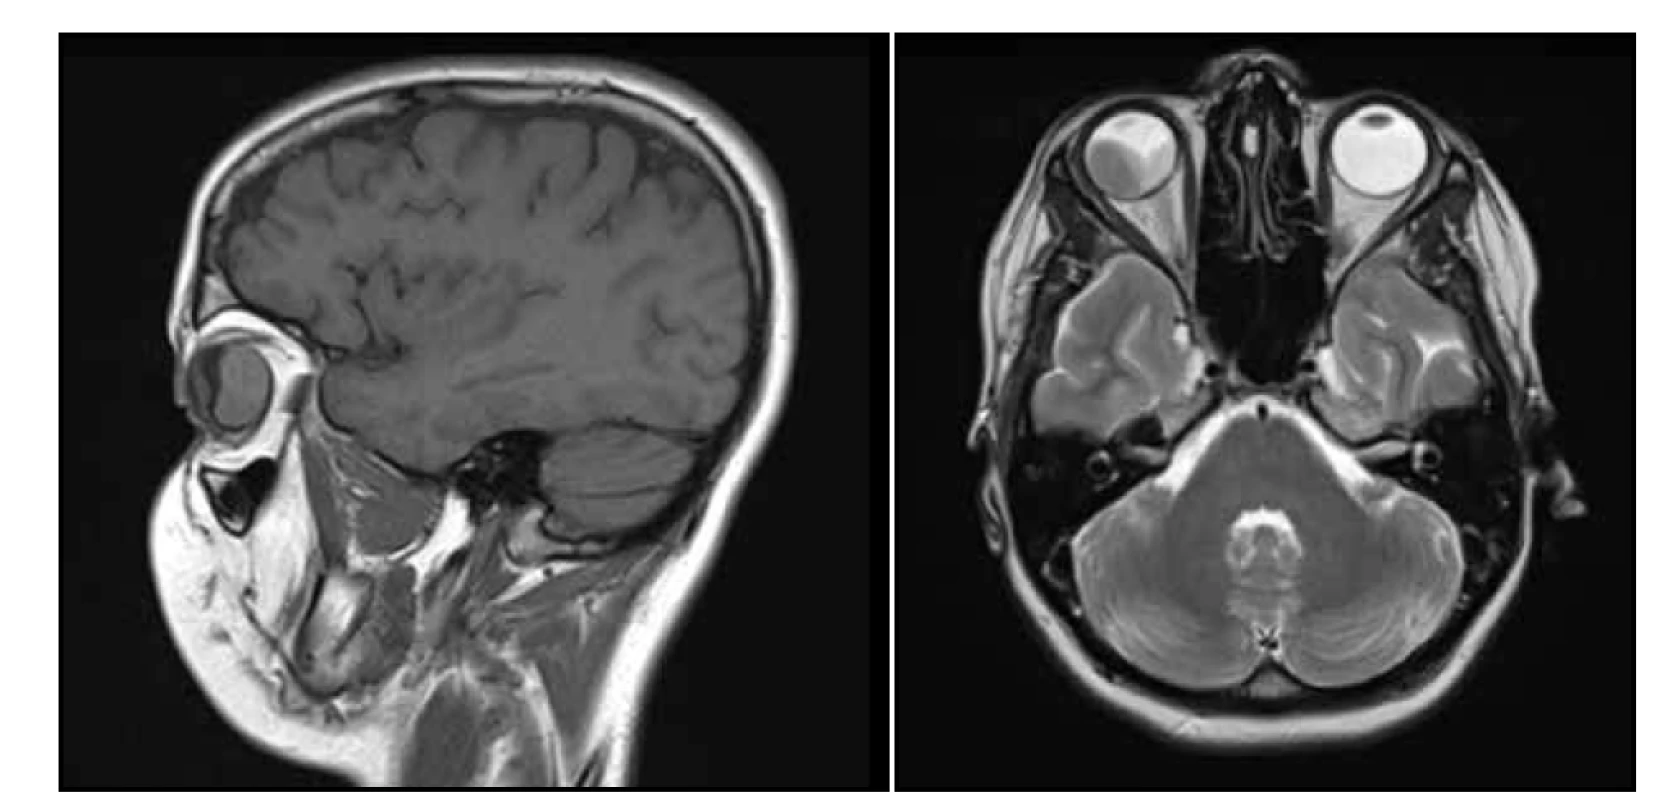 Magnetická rezonance hlavy snímek sagitální (A) a transversální (B) – v pravé části pravého bulbu solidní, měkkotkáňová
léze čočkovitého tvaru s postkontrastním výrazným sycením, levá a kaudální porce bulbu je vyplněna subretinálním
hematomem, bez kalcifikací